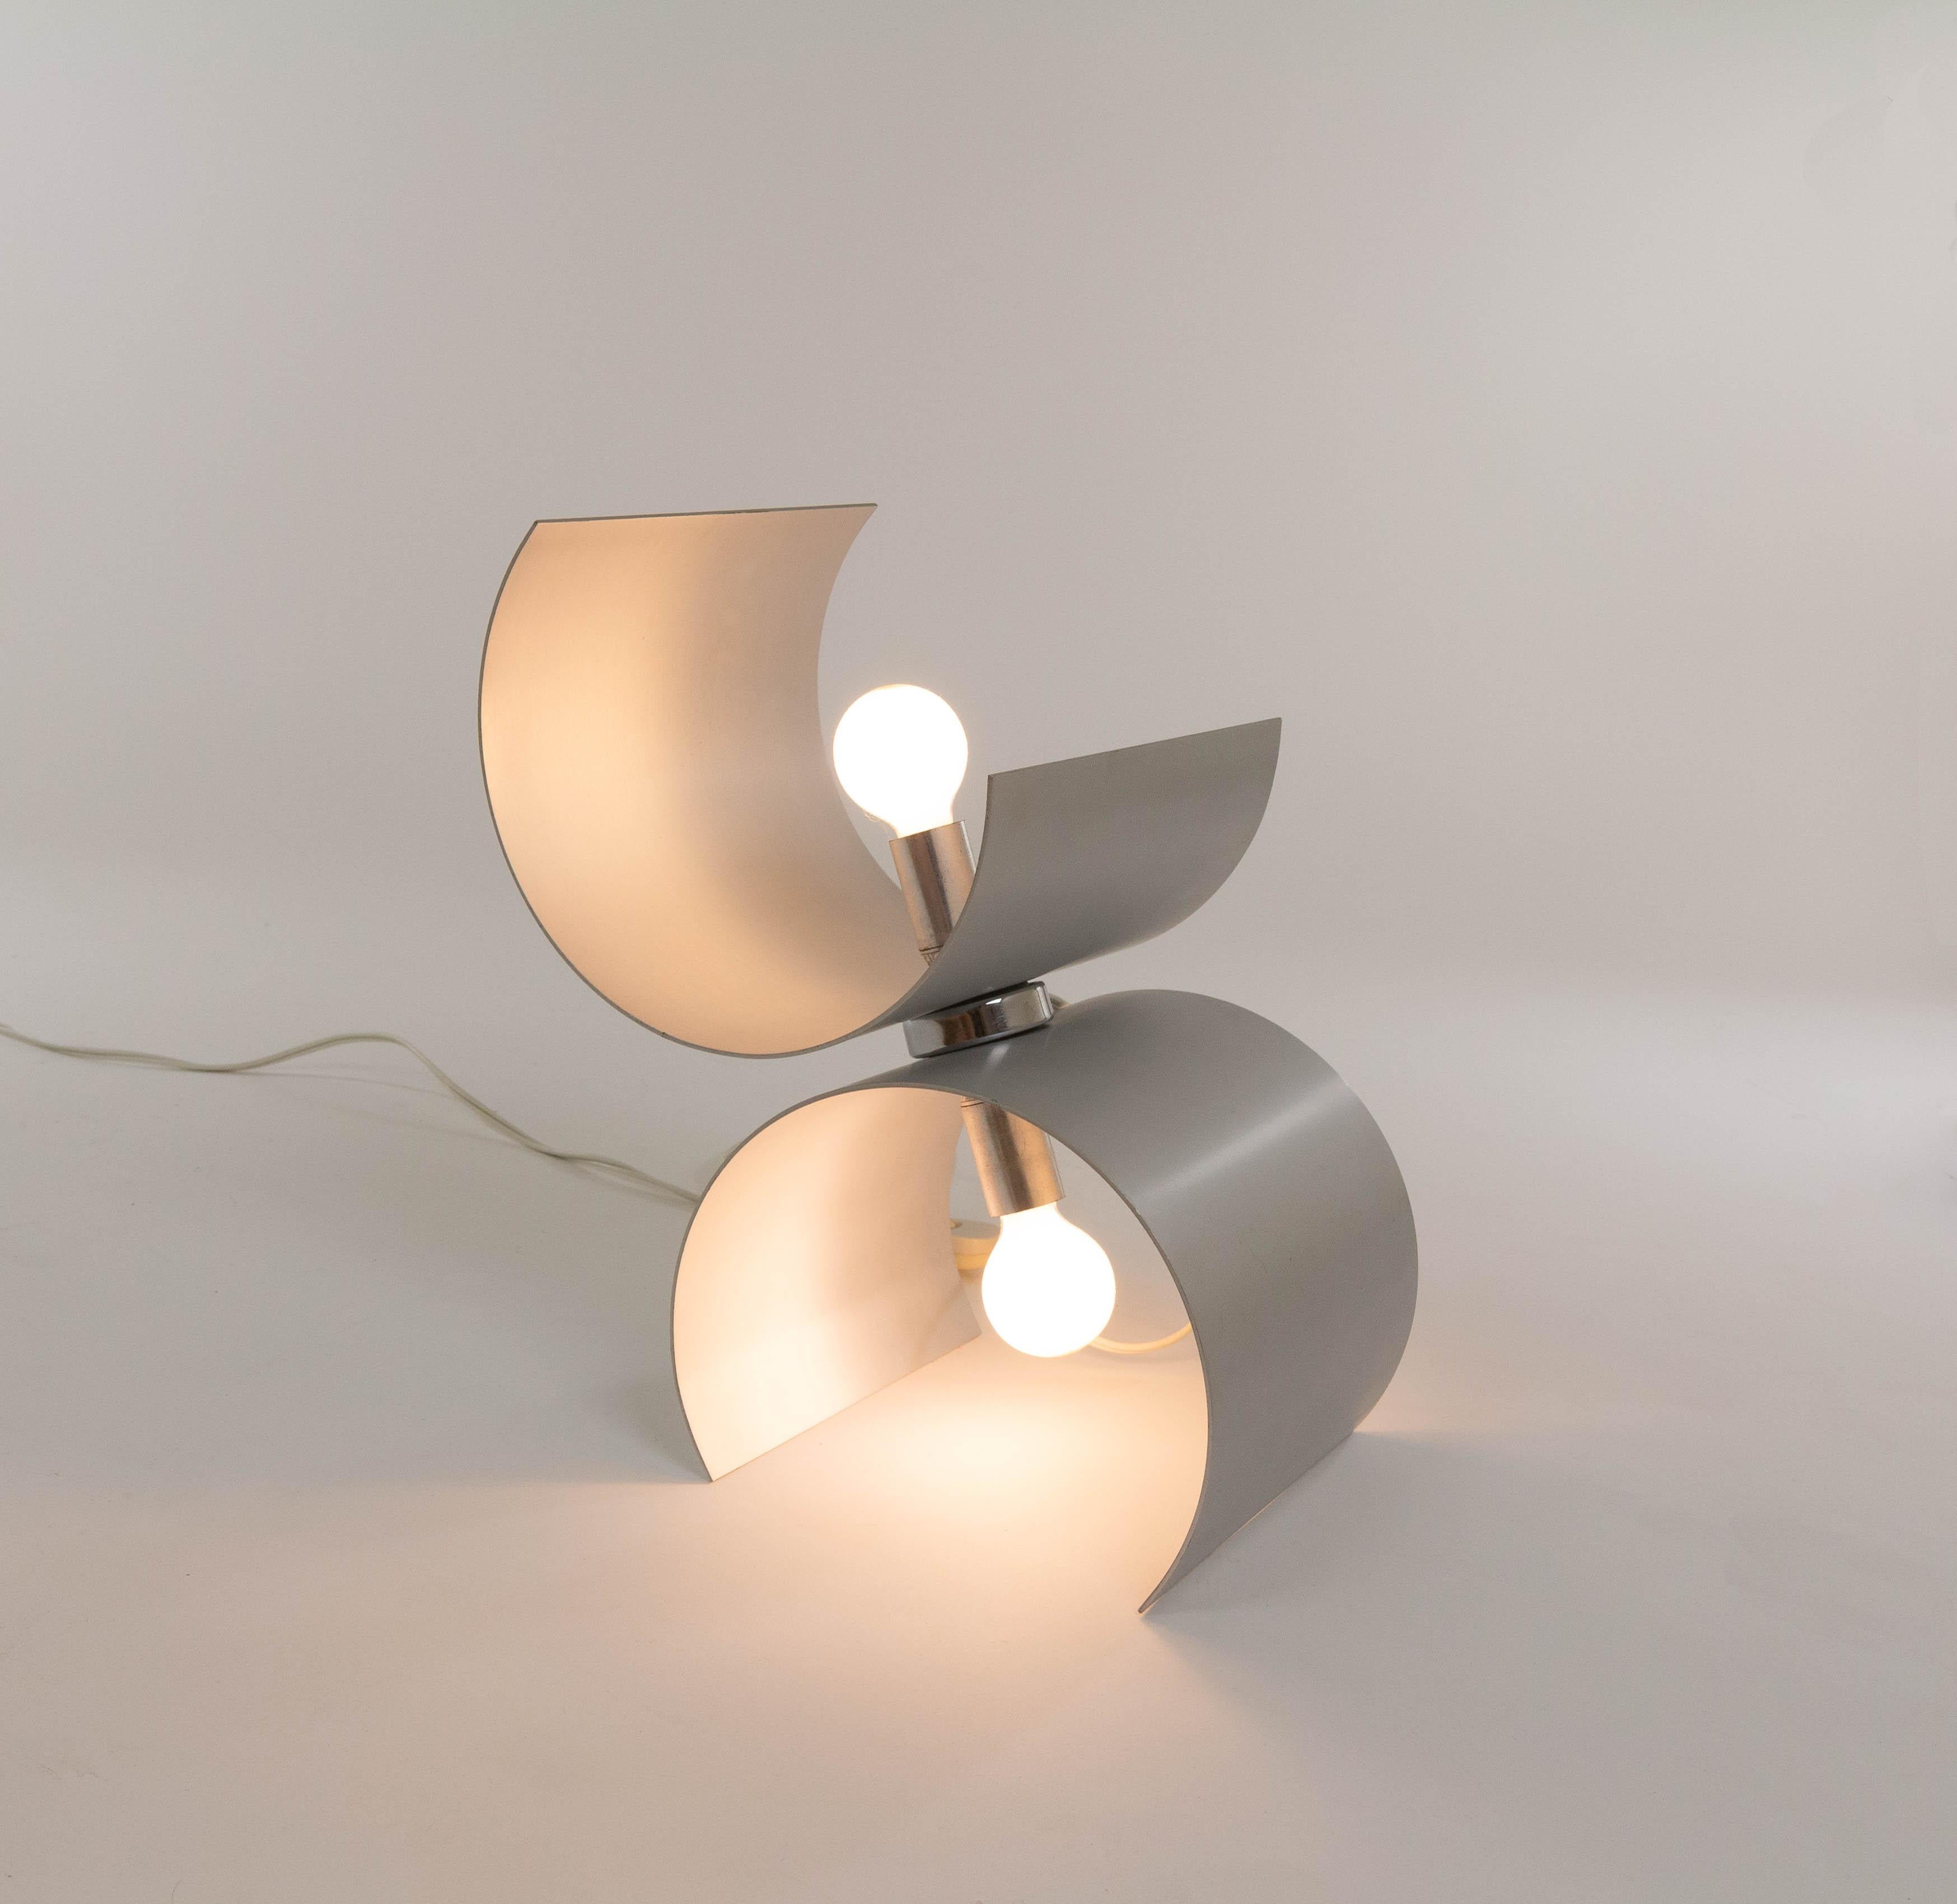 Lampe de table produite par Nucleo Sormani dans les années 1970.

La lampe se compose de deux parties incurvées en aluminium, chacune contenant une ampoule (E14). Les deux parties sont assemblées, ce qui leur permet de tourner. Le modèle des courbes